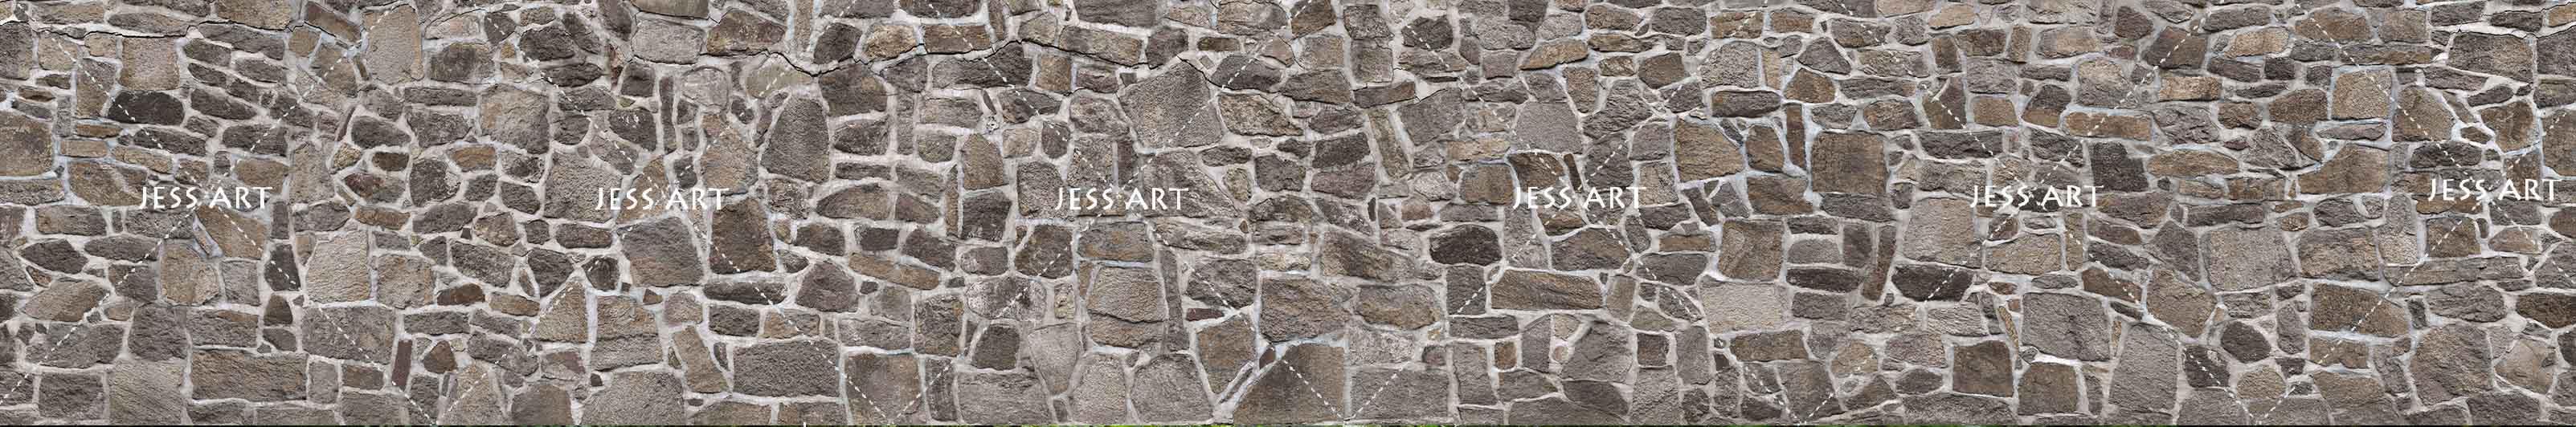 3D Stone Wall Effect  Wall Mural Wallpaper 86- Jess Art Decoration